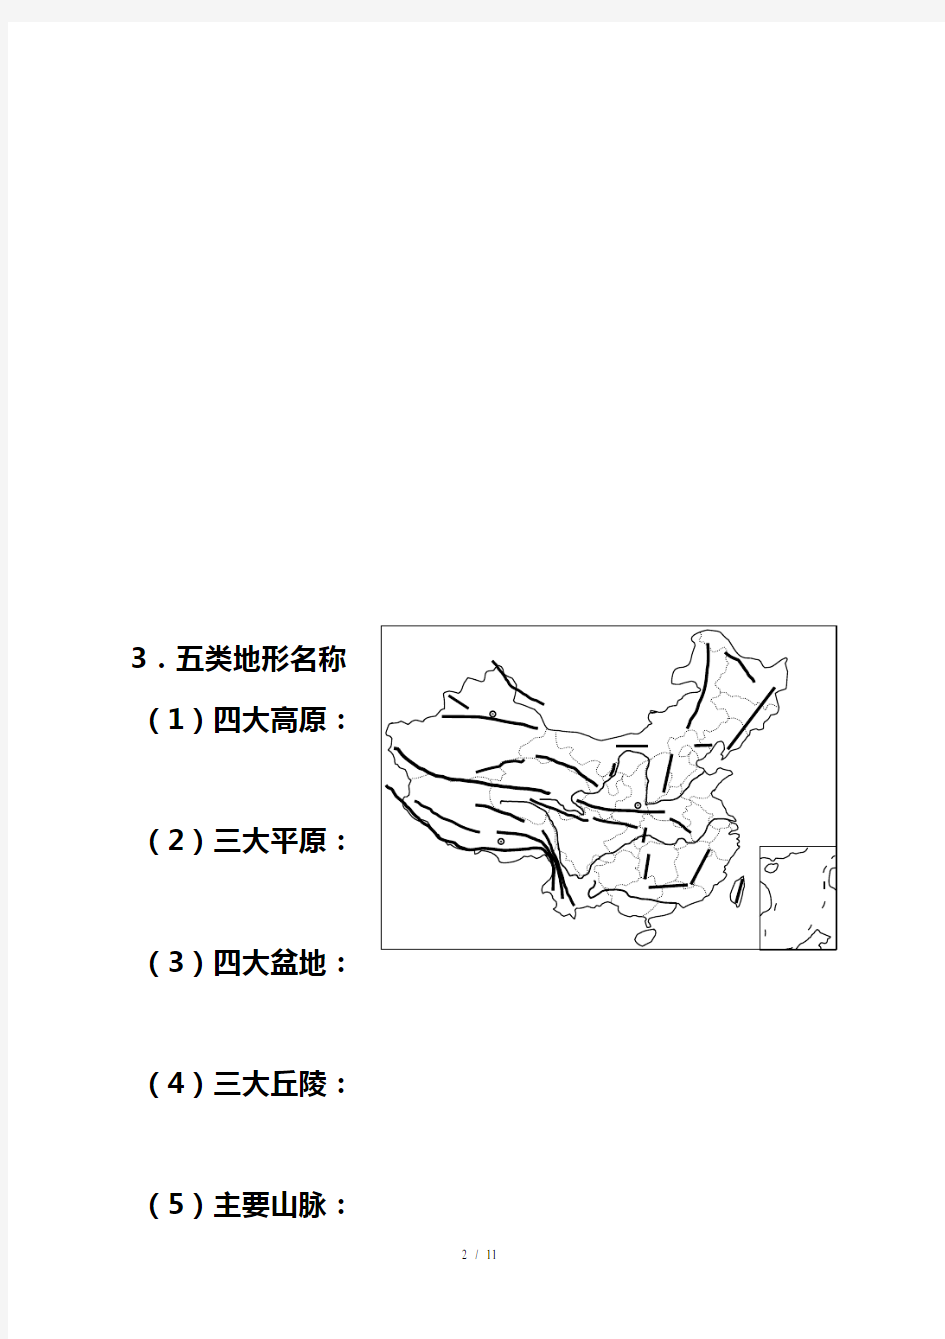 中国地理经典空白图(1)